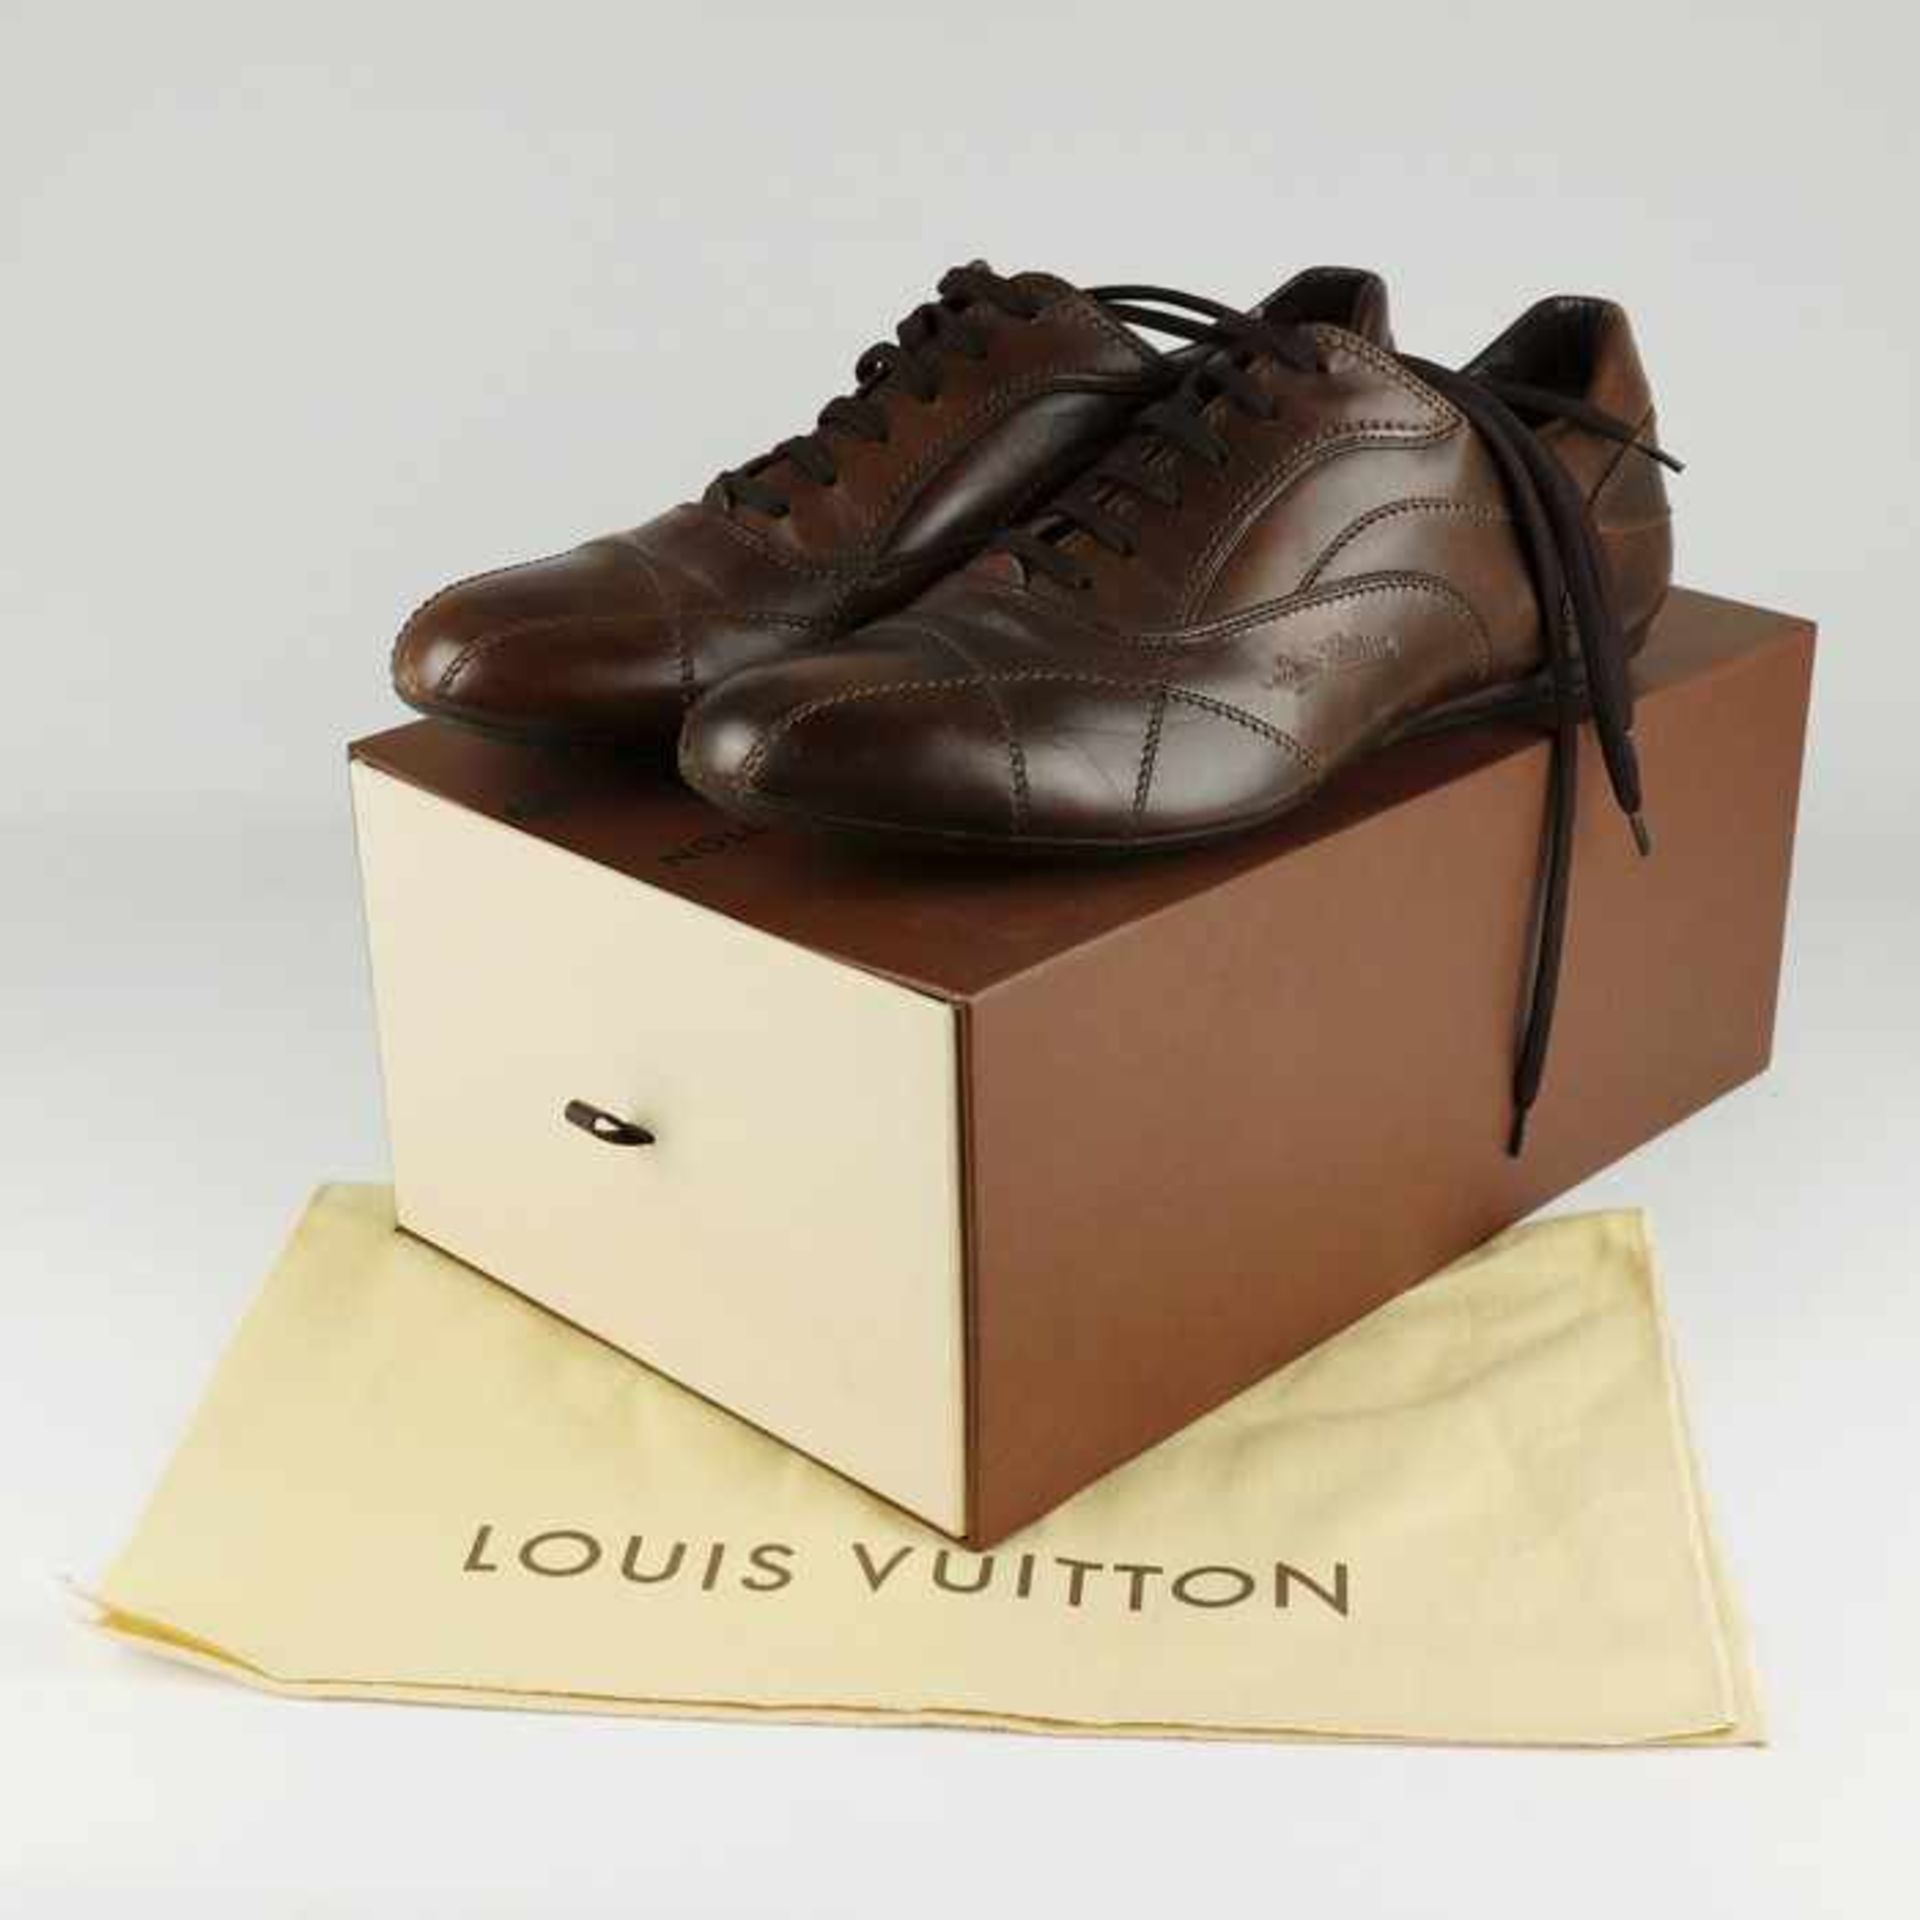 Louis Vuitton - HerrenschuheItalien, braunes Leder, sportliches Modell, OK, mit Staubbeutel u. - Bild 2 aus 8